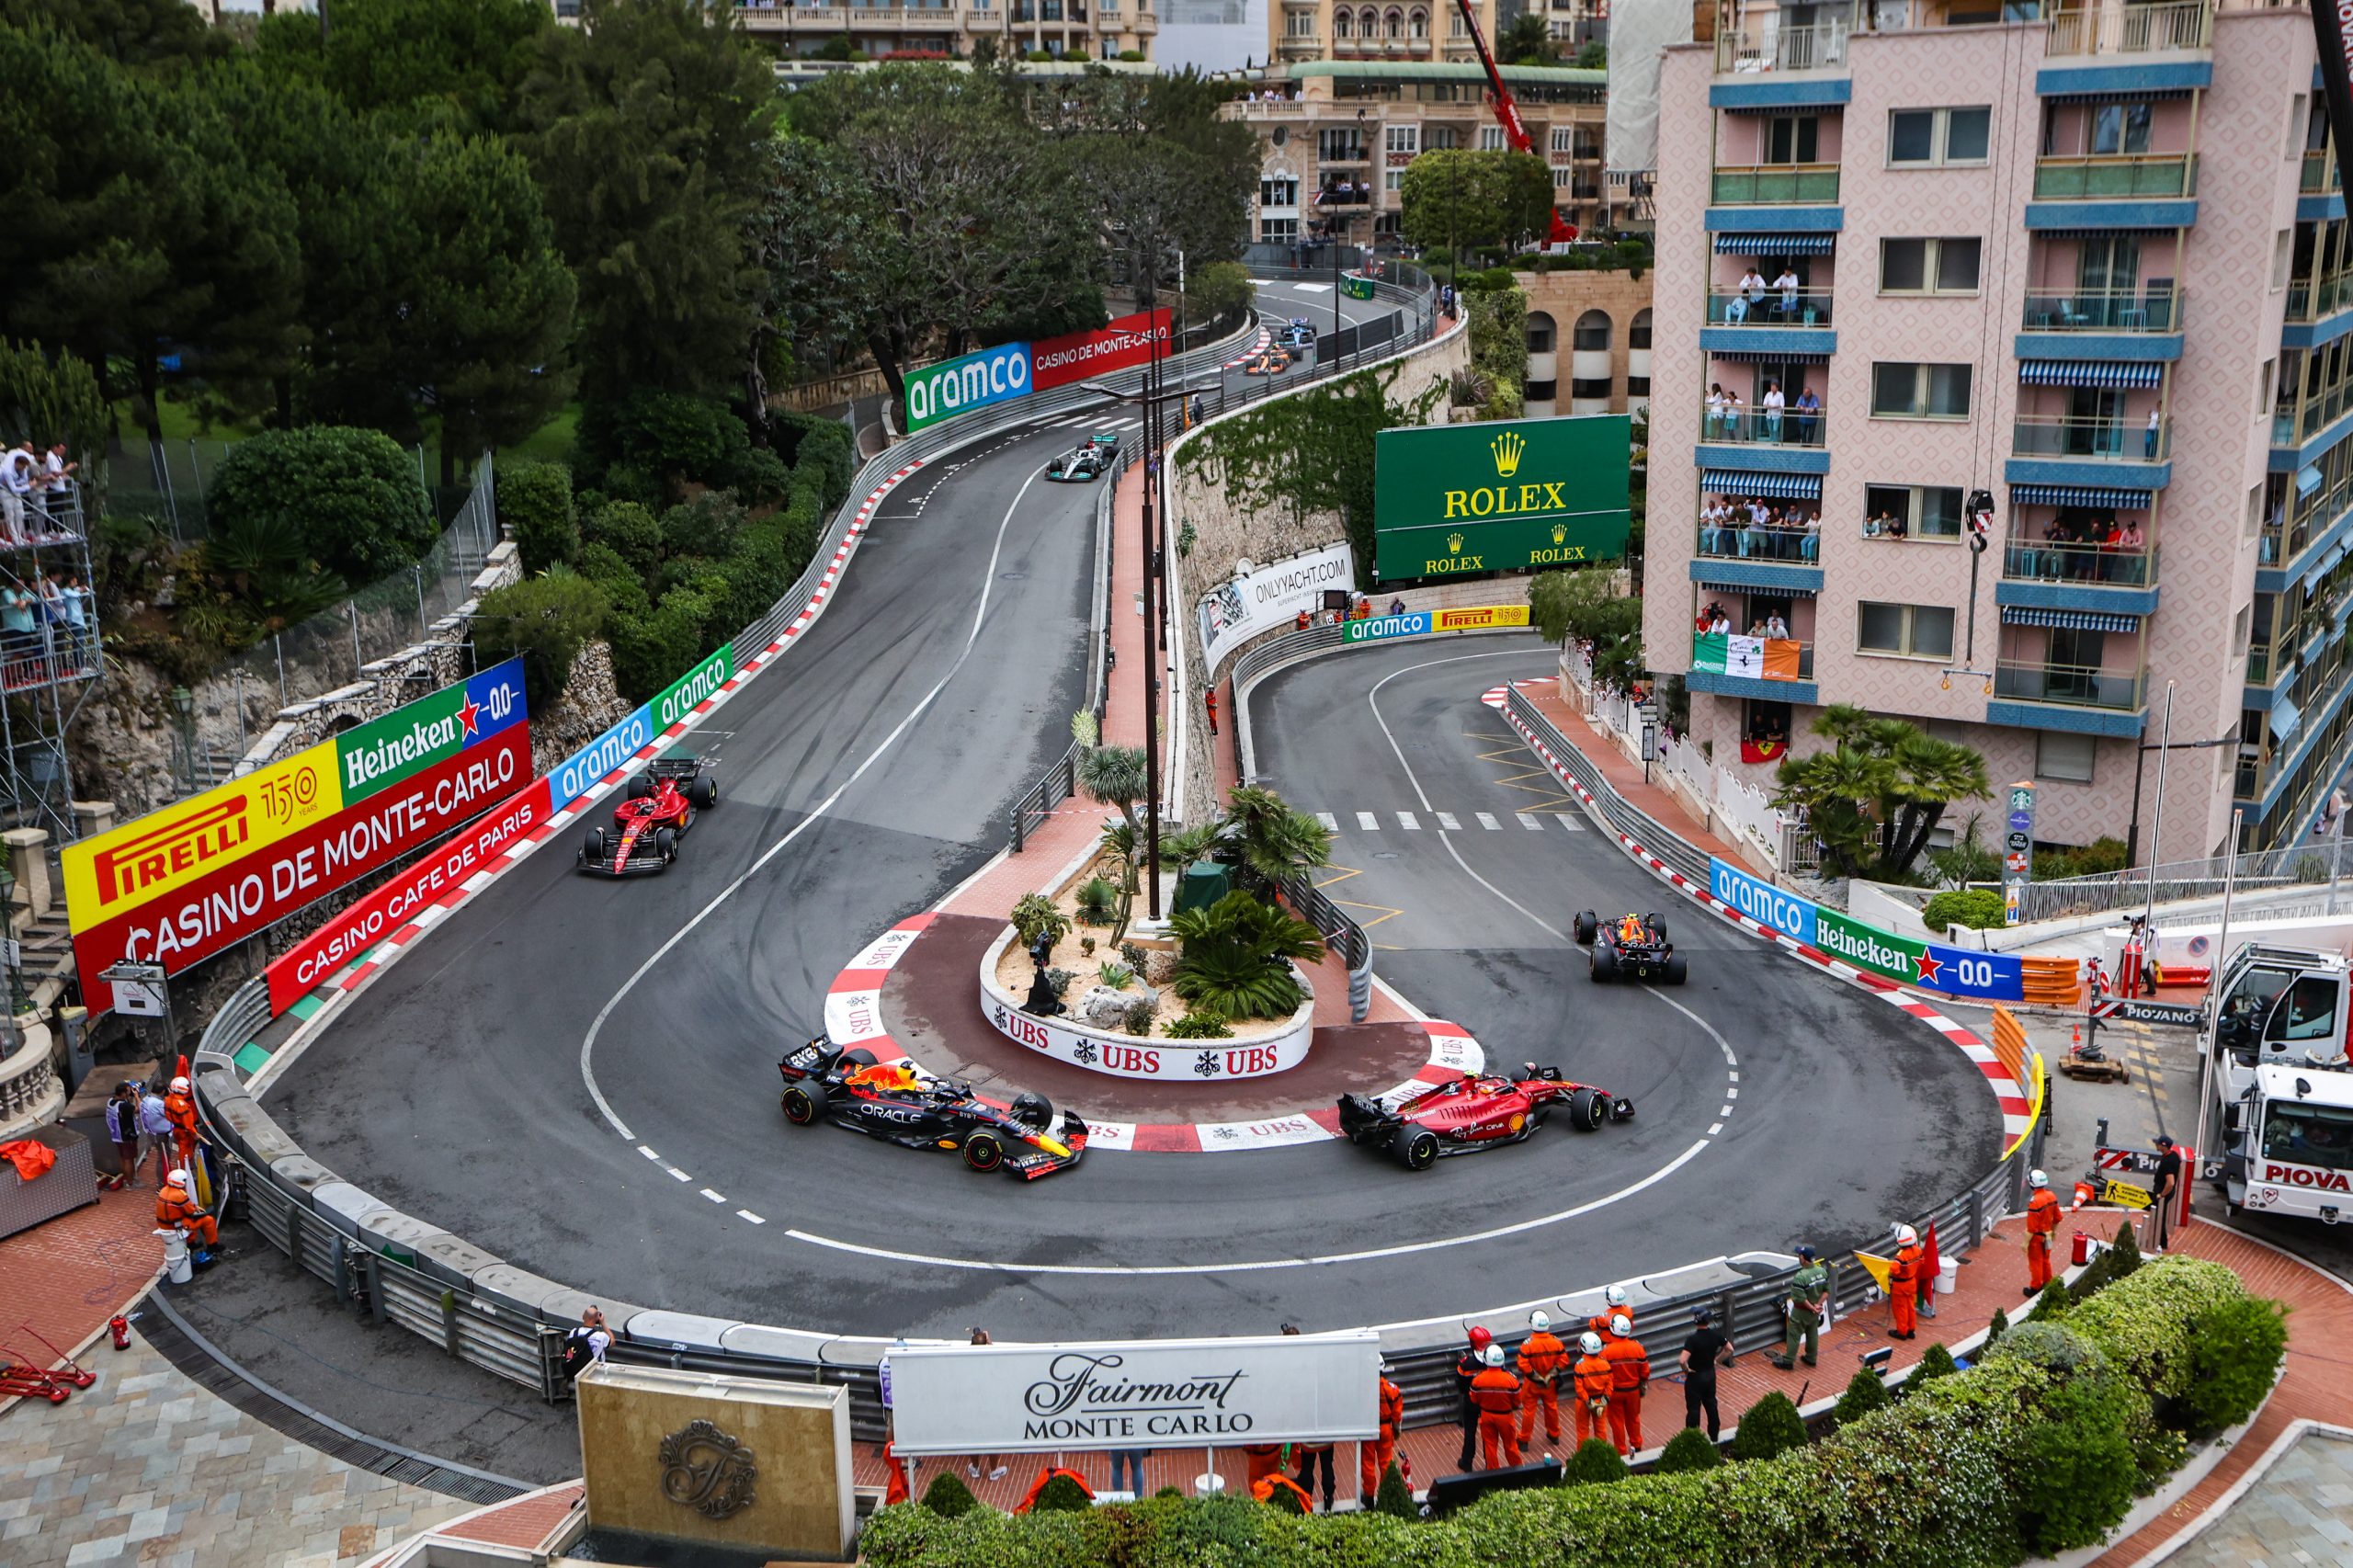 F1 – MONACO GRAND PRIX 2022 – Race